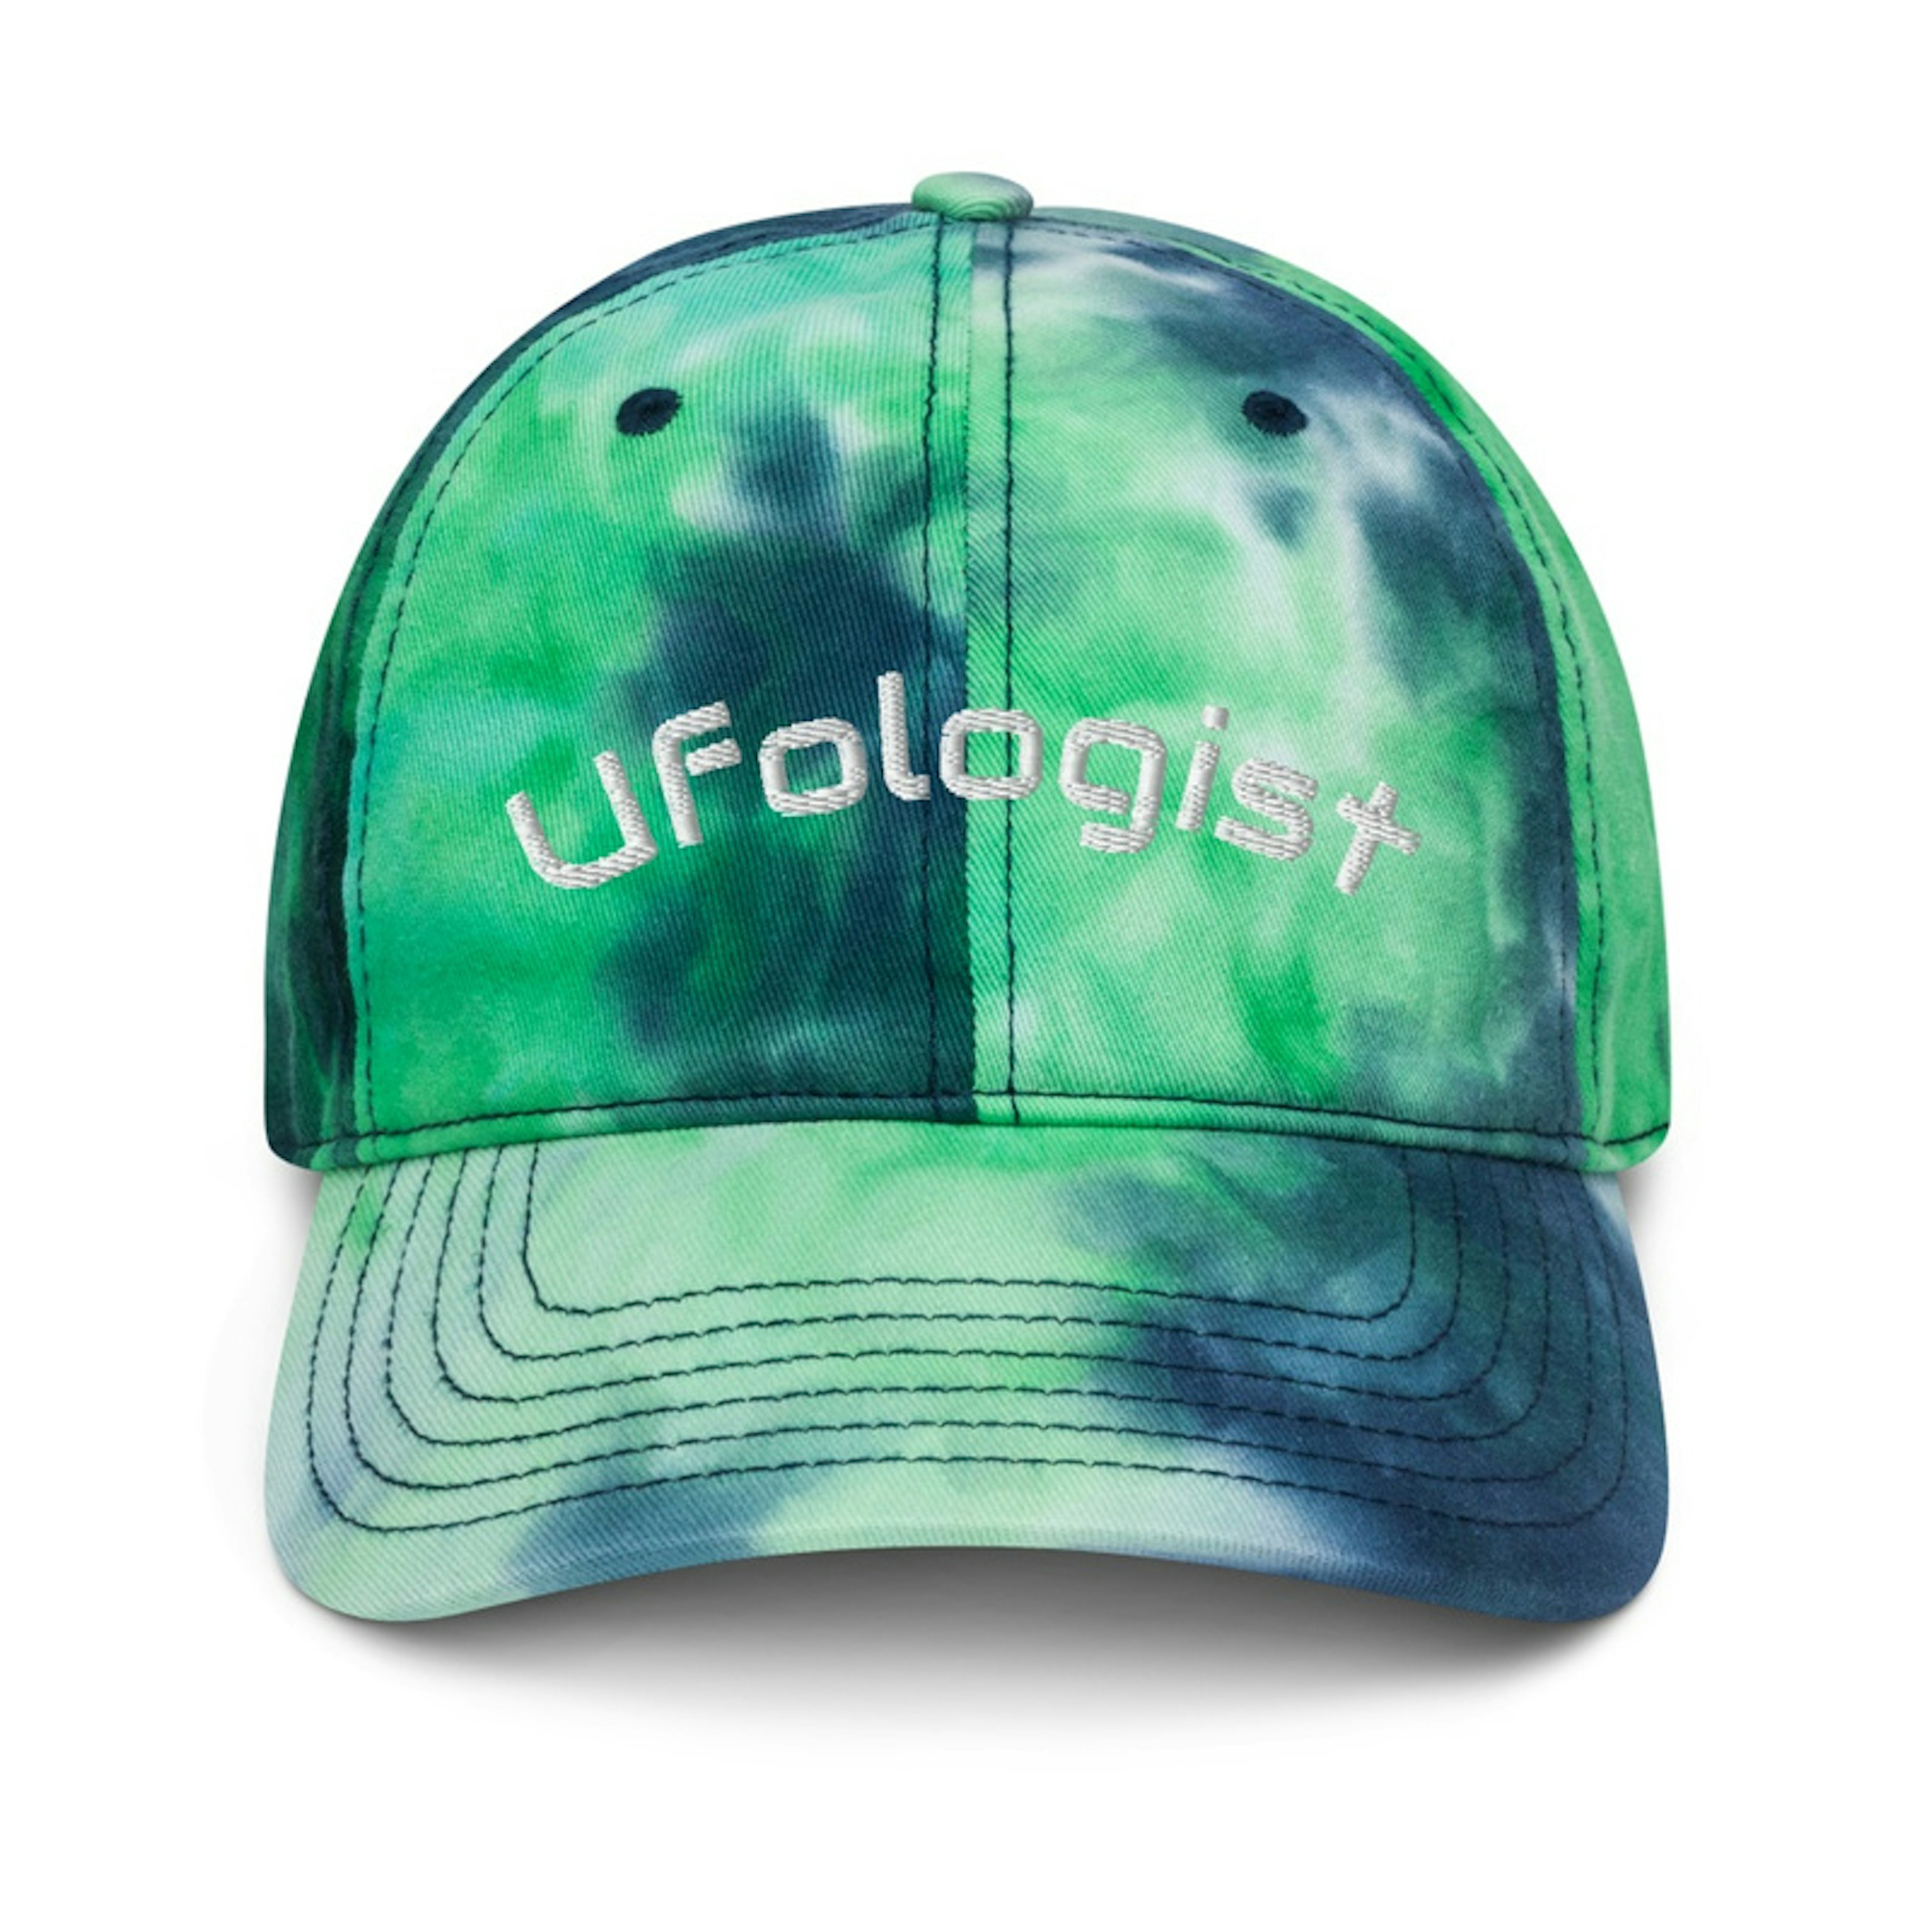 Ufologist Hat